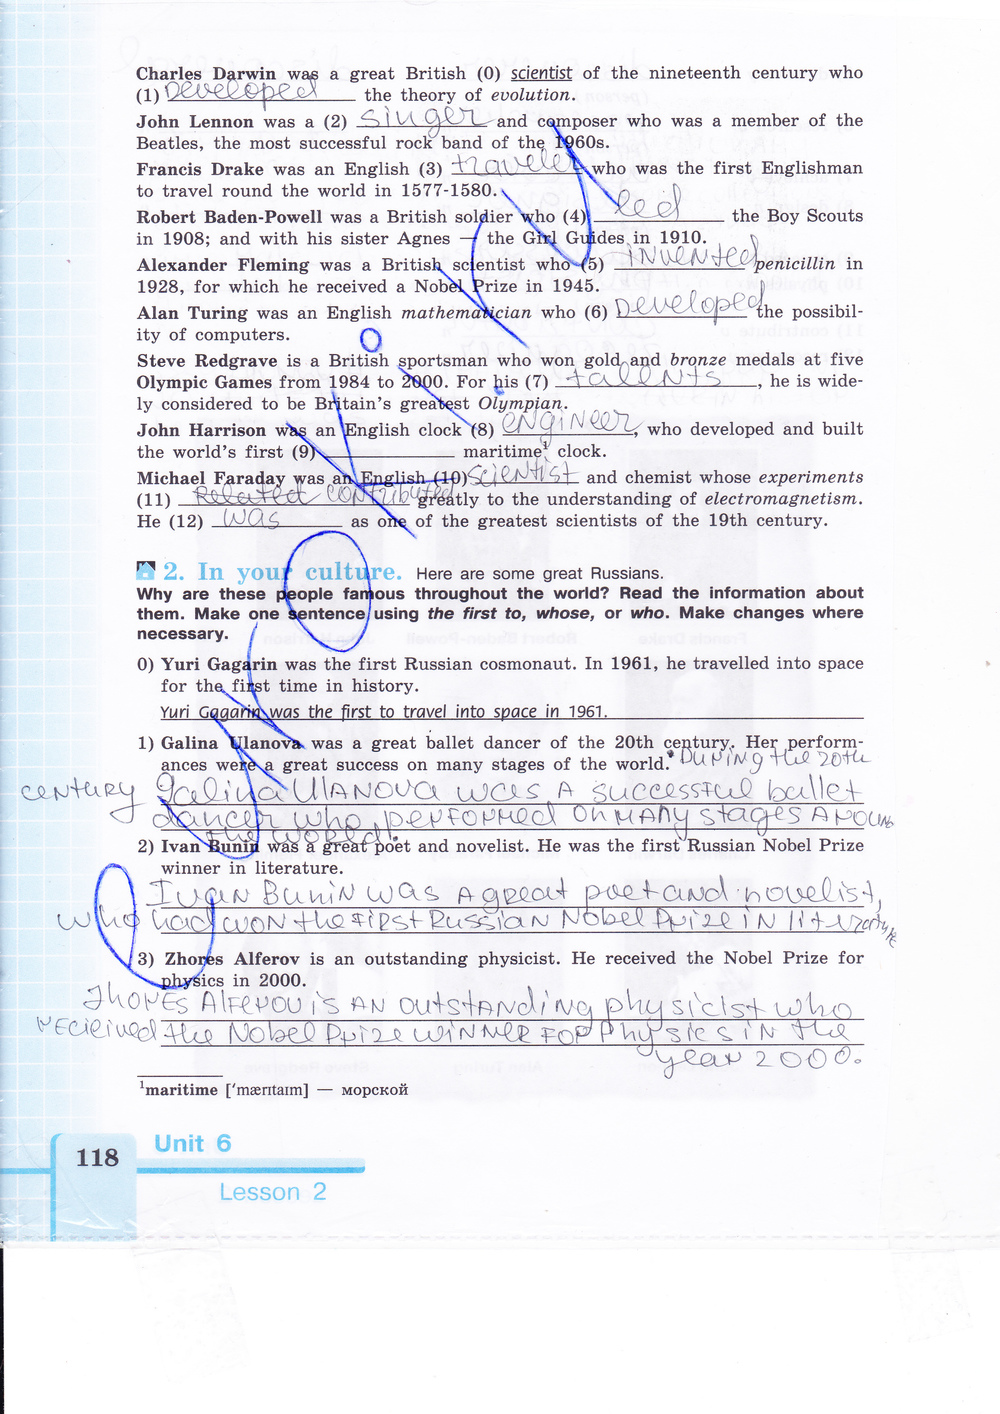 Рабочая тетрадь по английскому языку 9 класс (зеленая и синяя обложки) Кузовлев, Лапа, Перегудова Страница 118